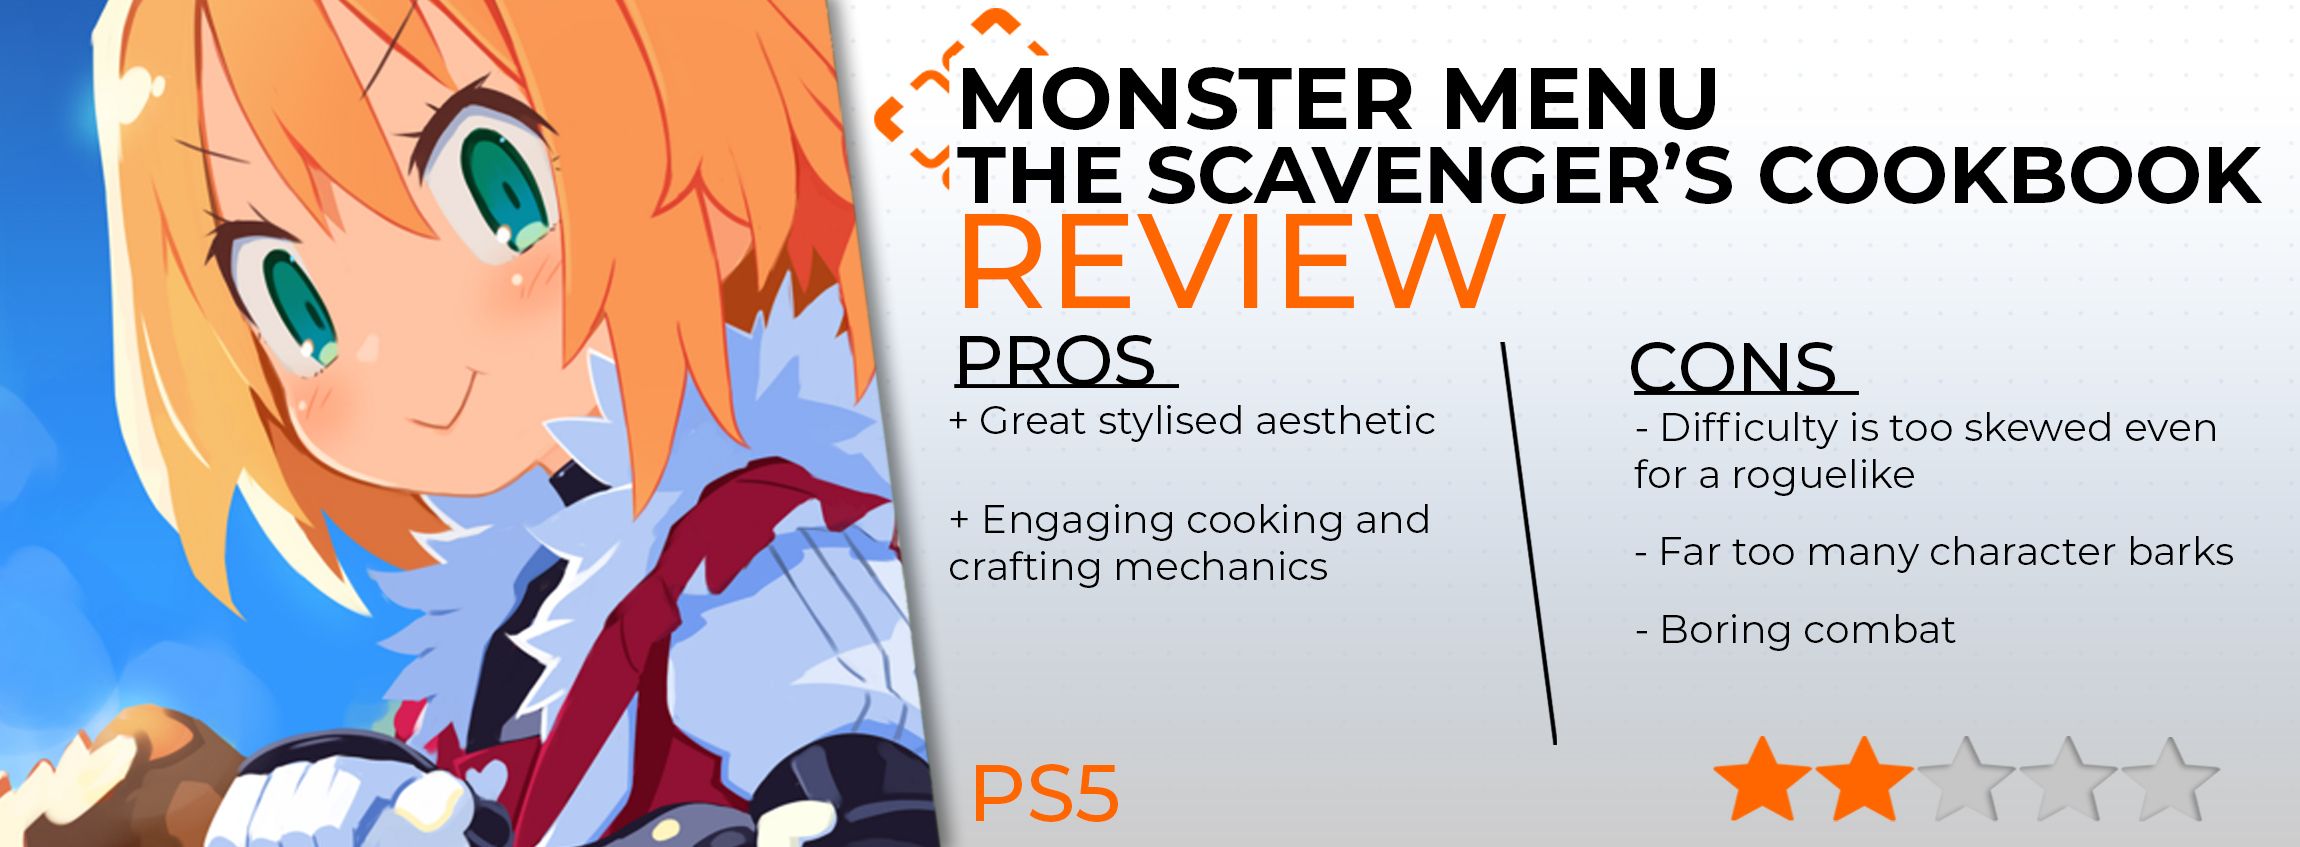 Monster Menu review card